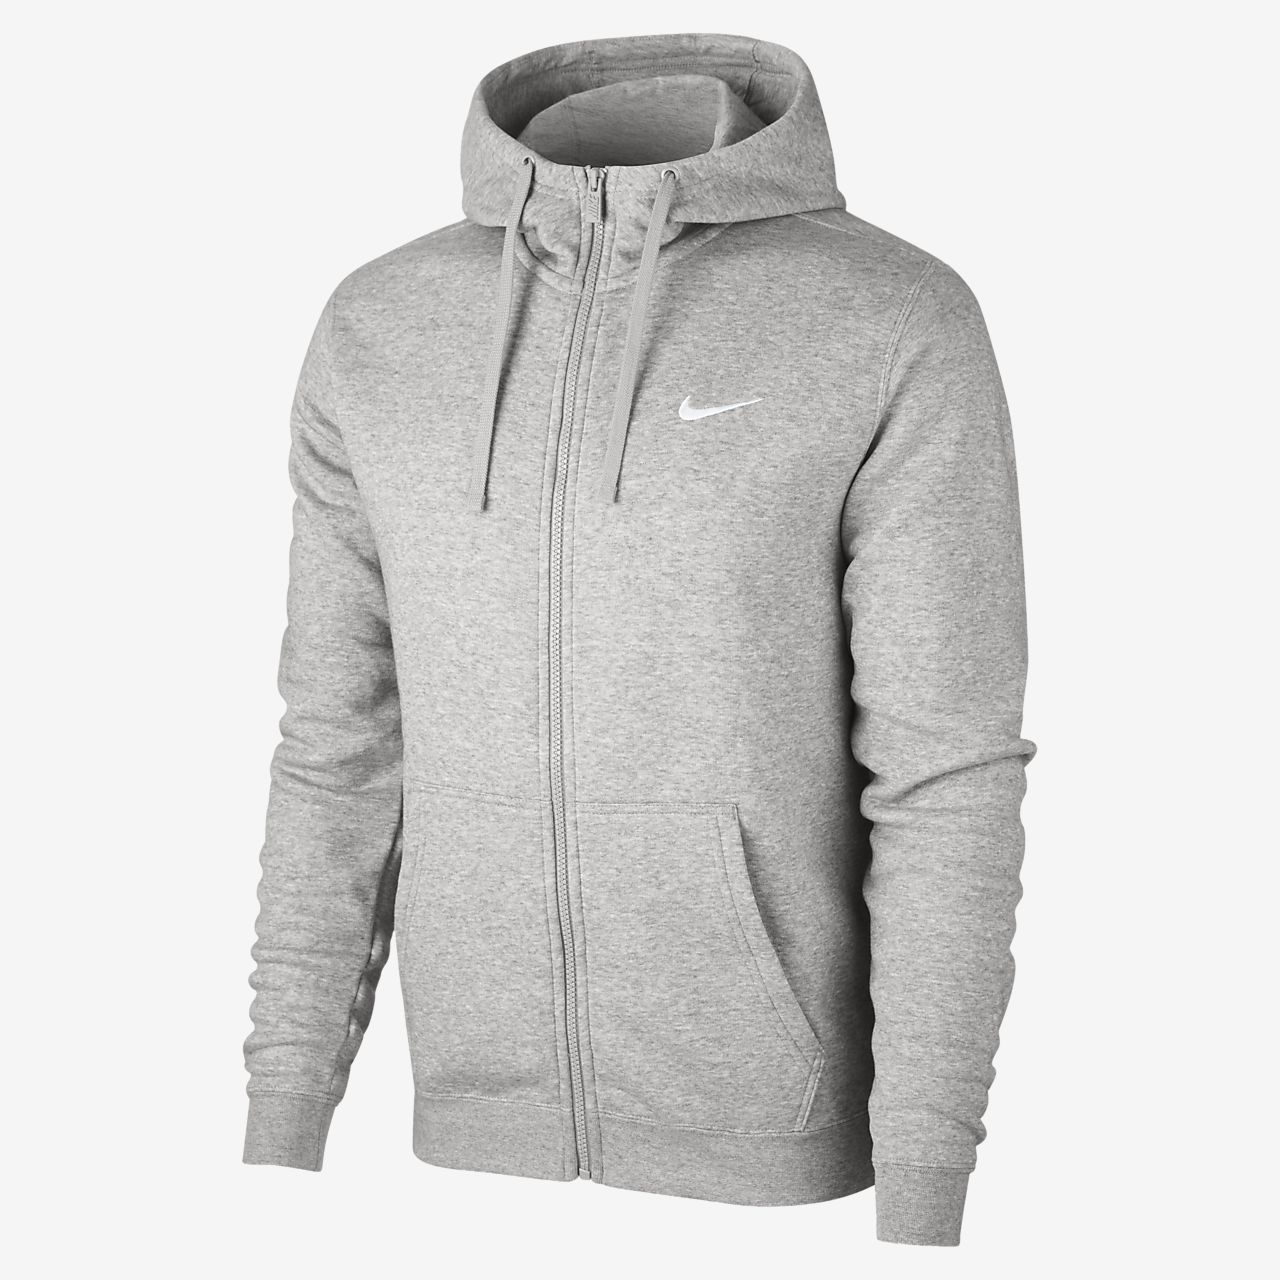 nike zip hoodie grey